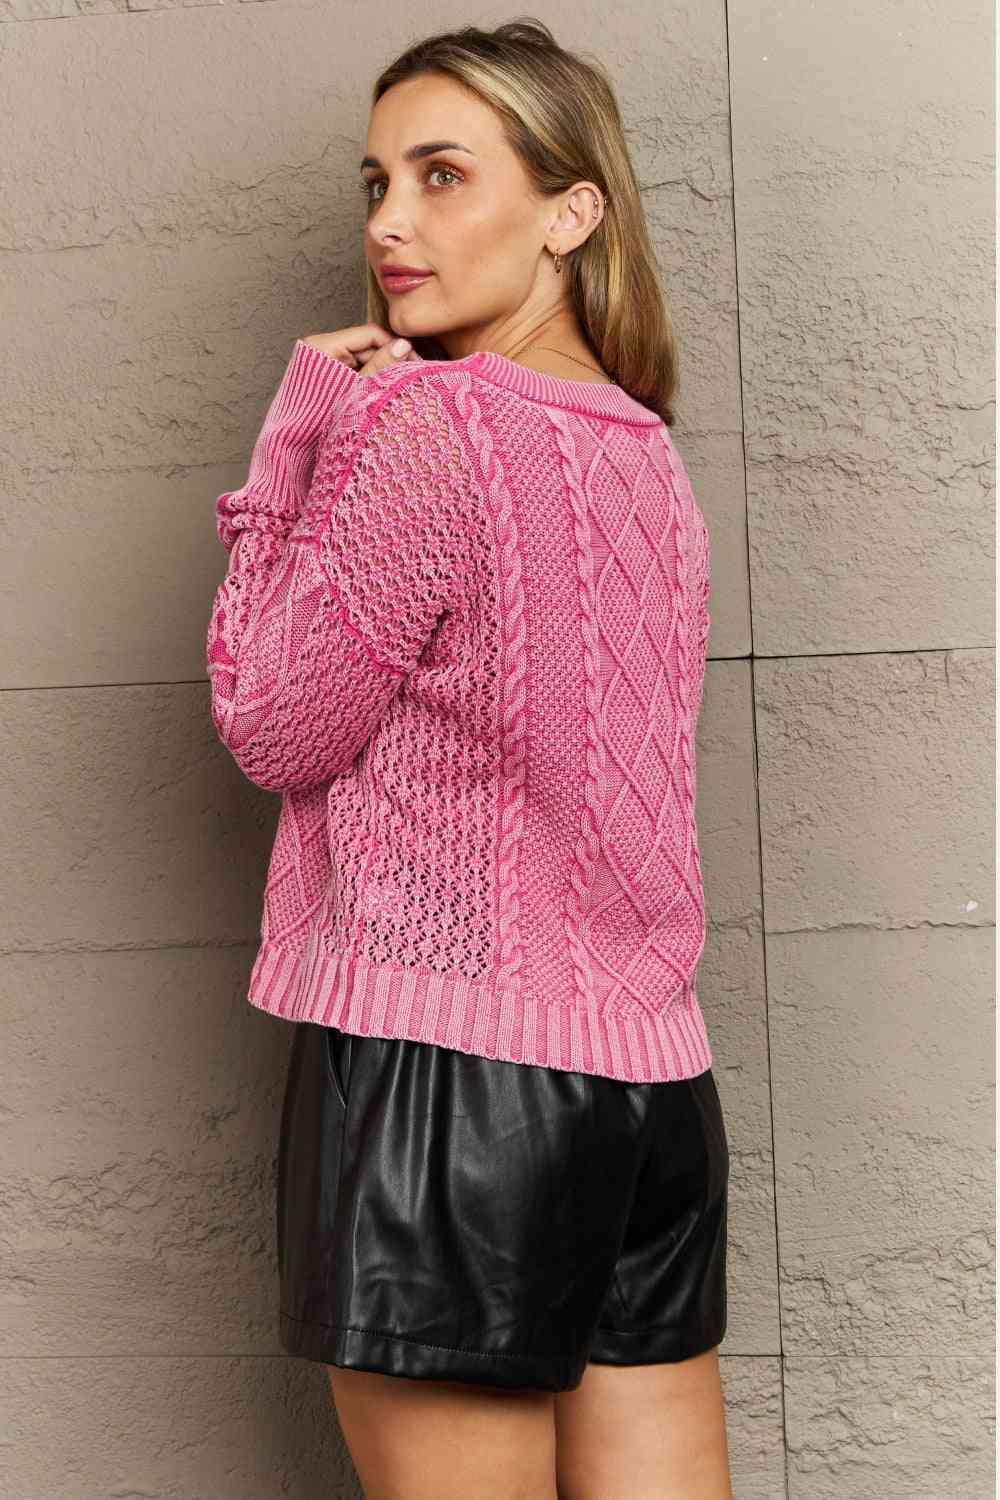 HEYSON Soft Focus Full Size Wash Cable Knit Cardigan in Fuchsia - AMIClubwear